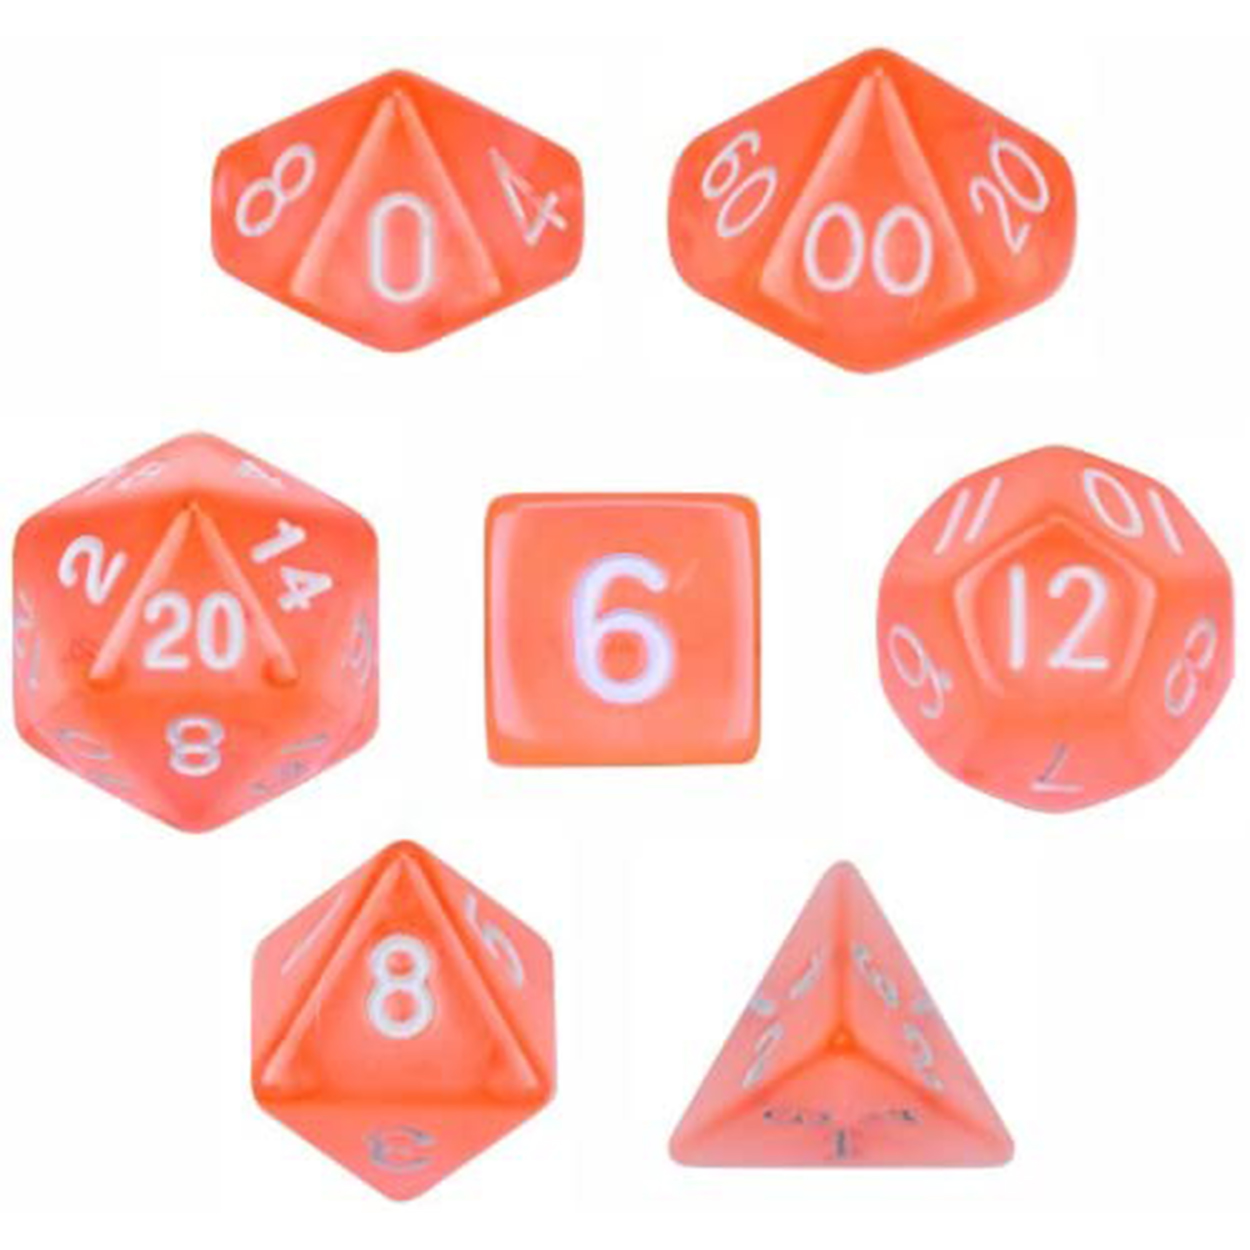 تاس بازی ویز دایس مدل Translucent Orange مجموعه 7 عددی